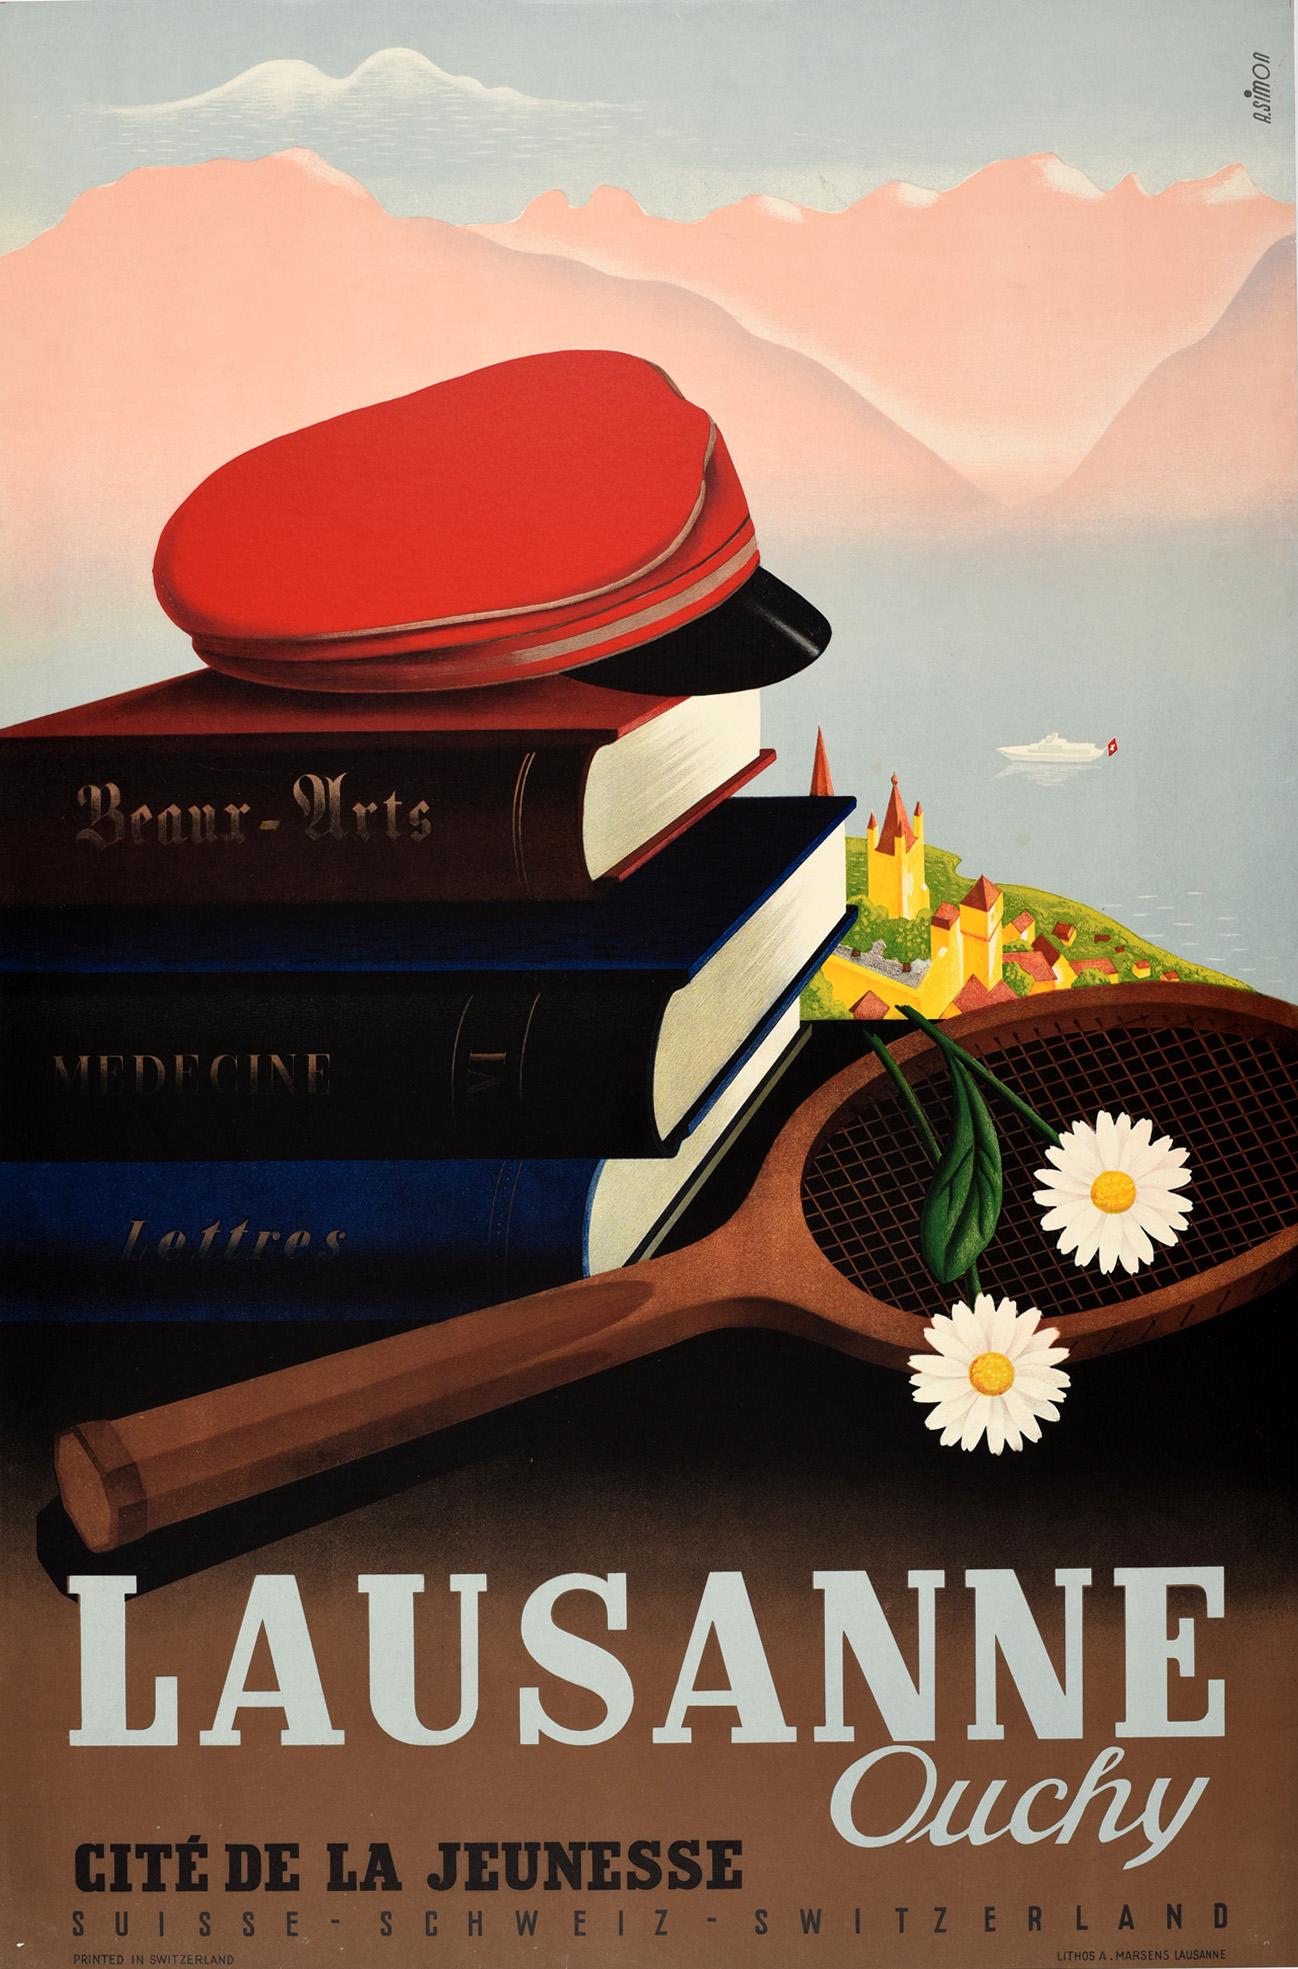 Andre Simon Print - Original Vintage Travel Poster Lausanne Ouchy Switzerland Cite De La Jeunesse